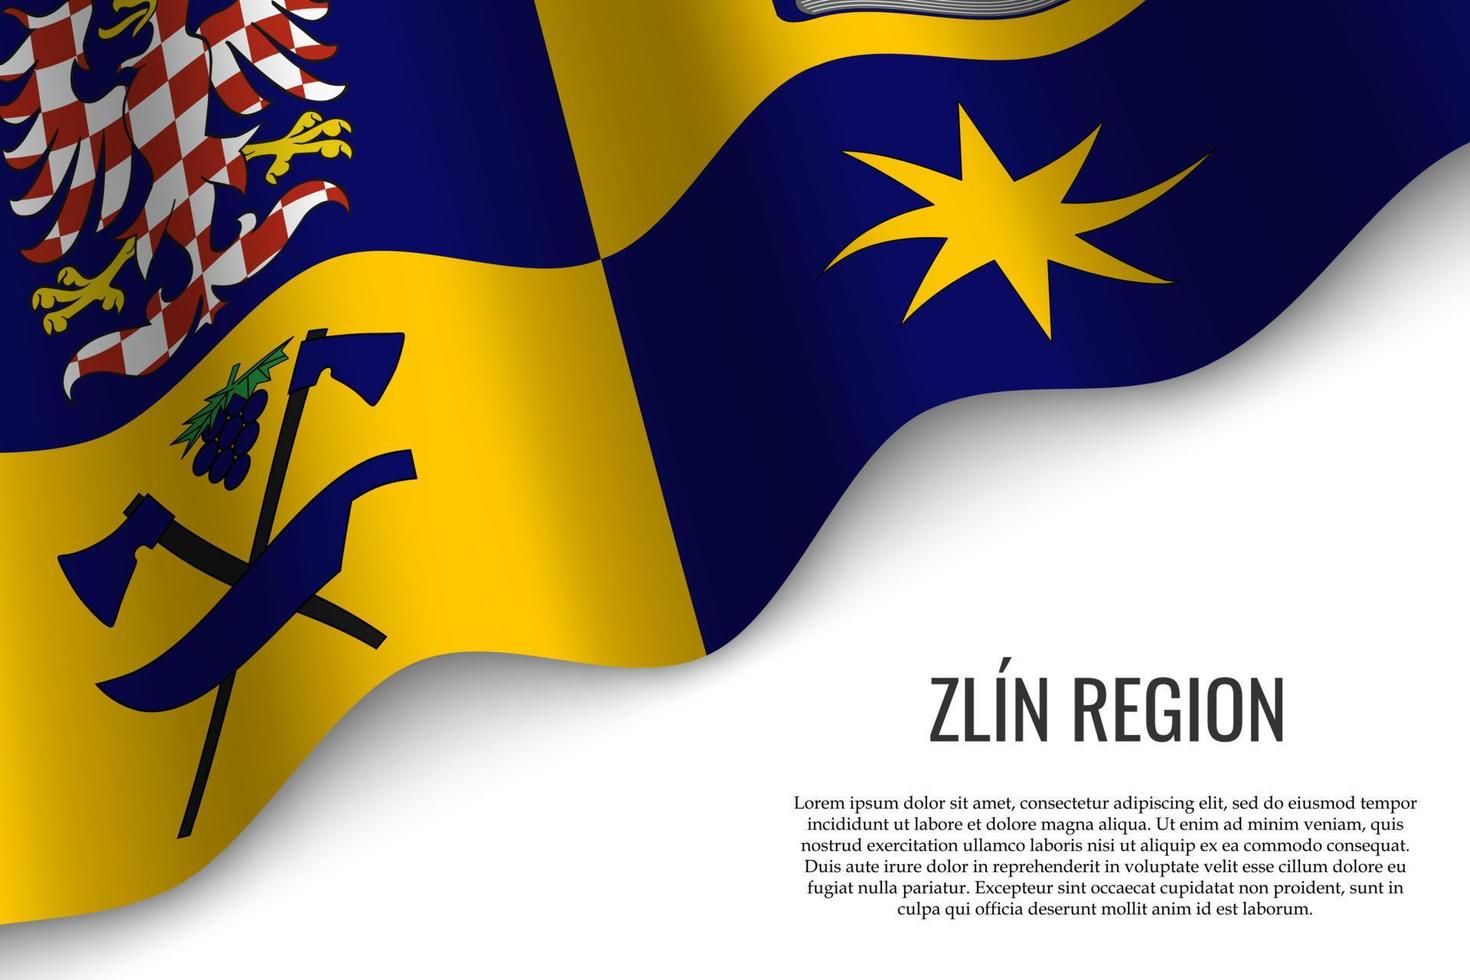 bandera ondeante de la región república checa vector